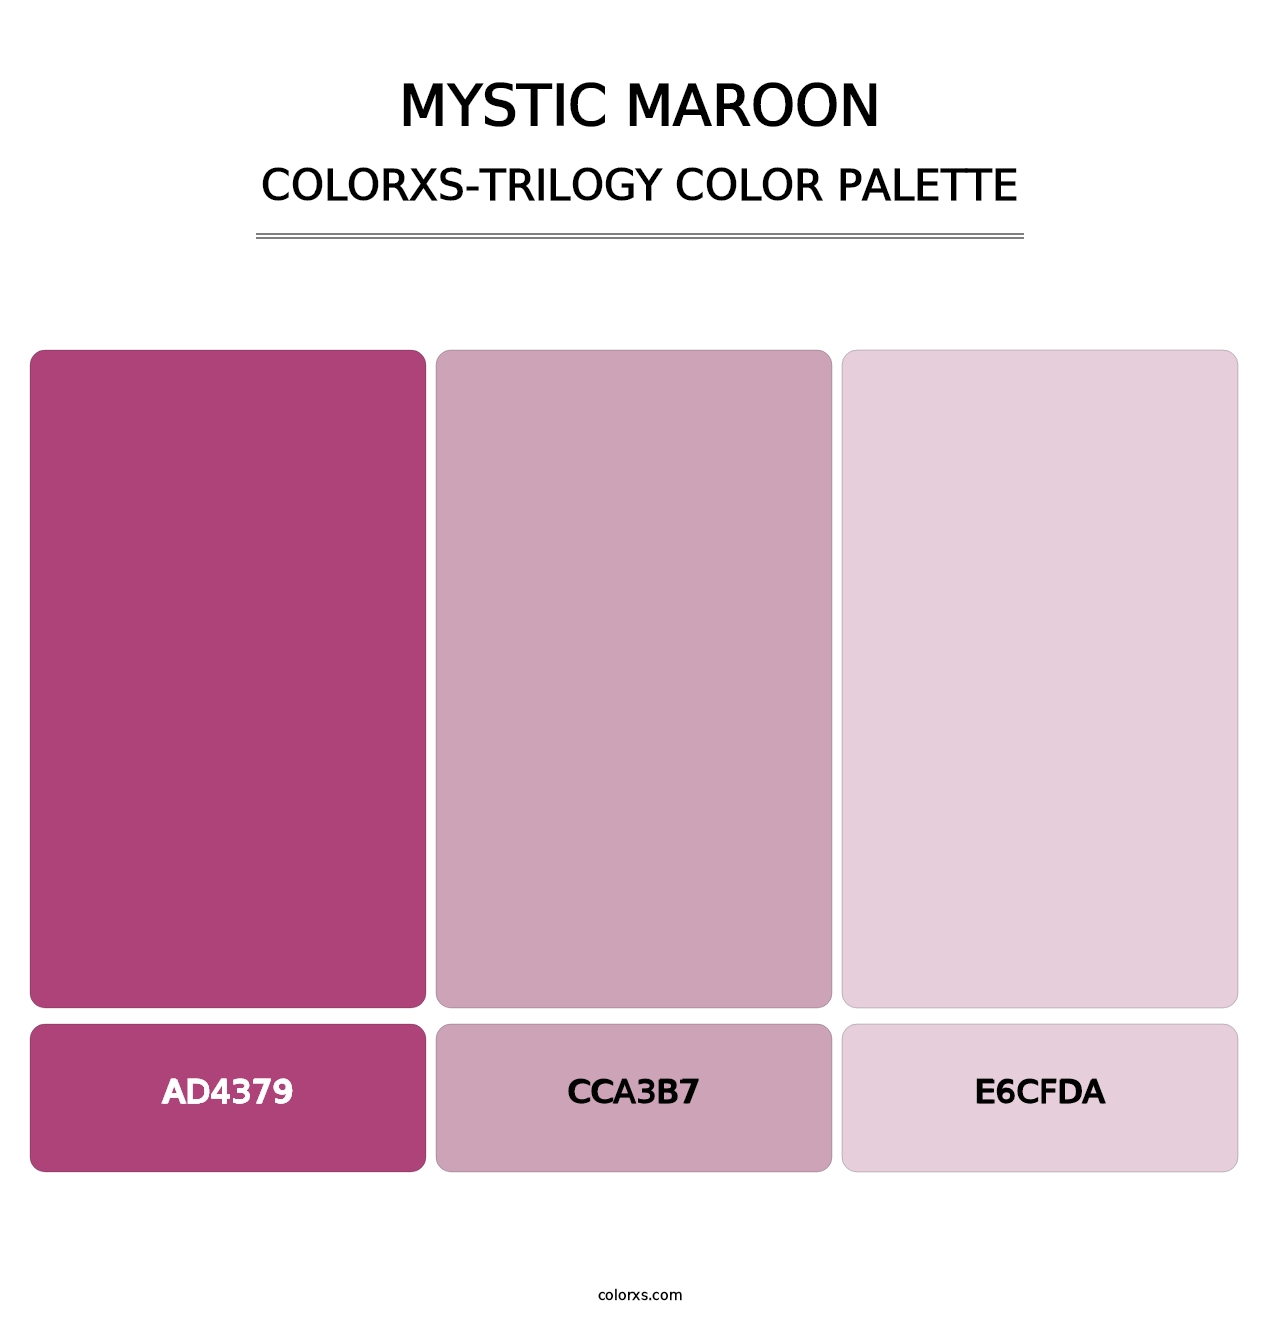 Mystic Maroon - Colorxs Trilogy Palette